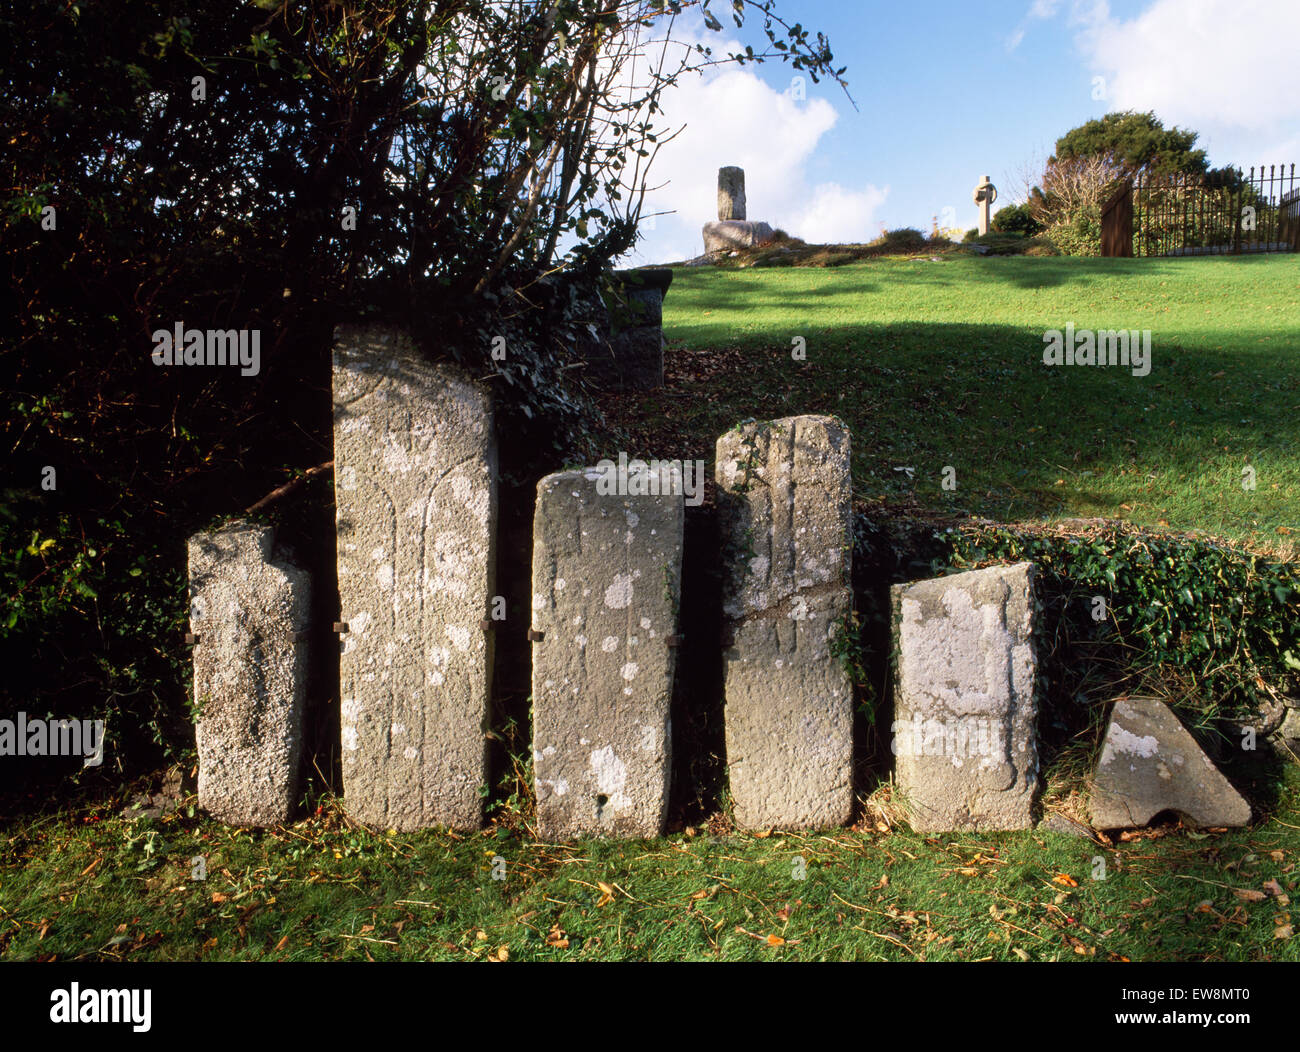 Inizio Medioevo cross-contrassegnato lapidi in Llangaffo sagrato, Anglesey: cross-albero & chiesa vecchia fondamenta su affioramento. Presto il sito monastico. Foto Stock